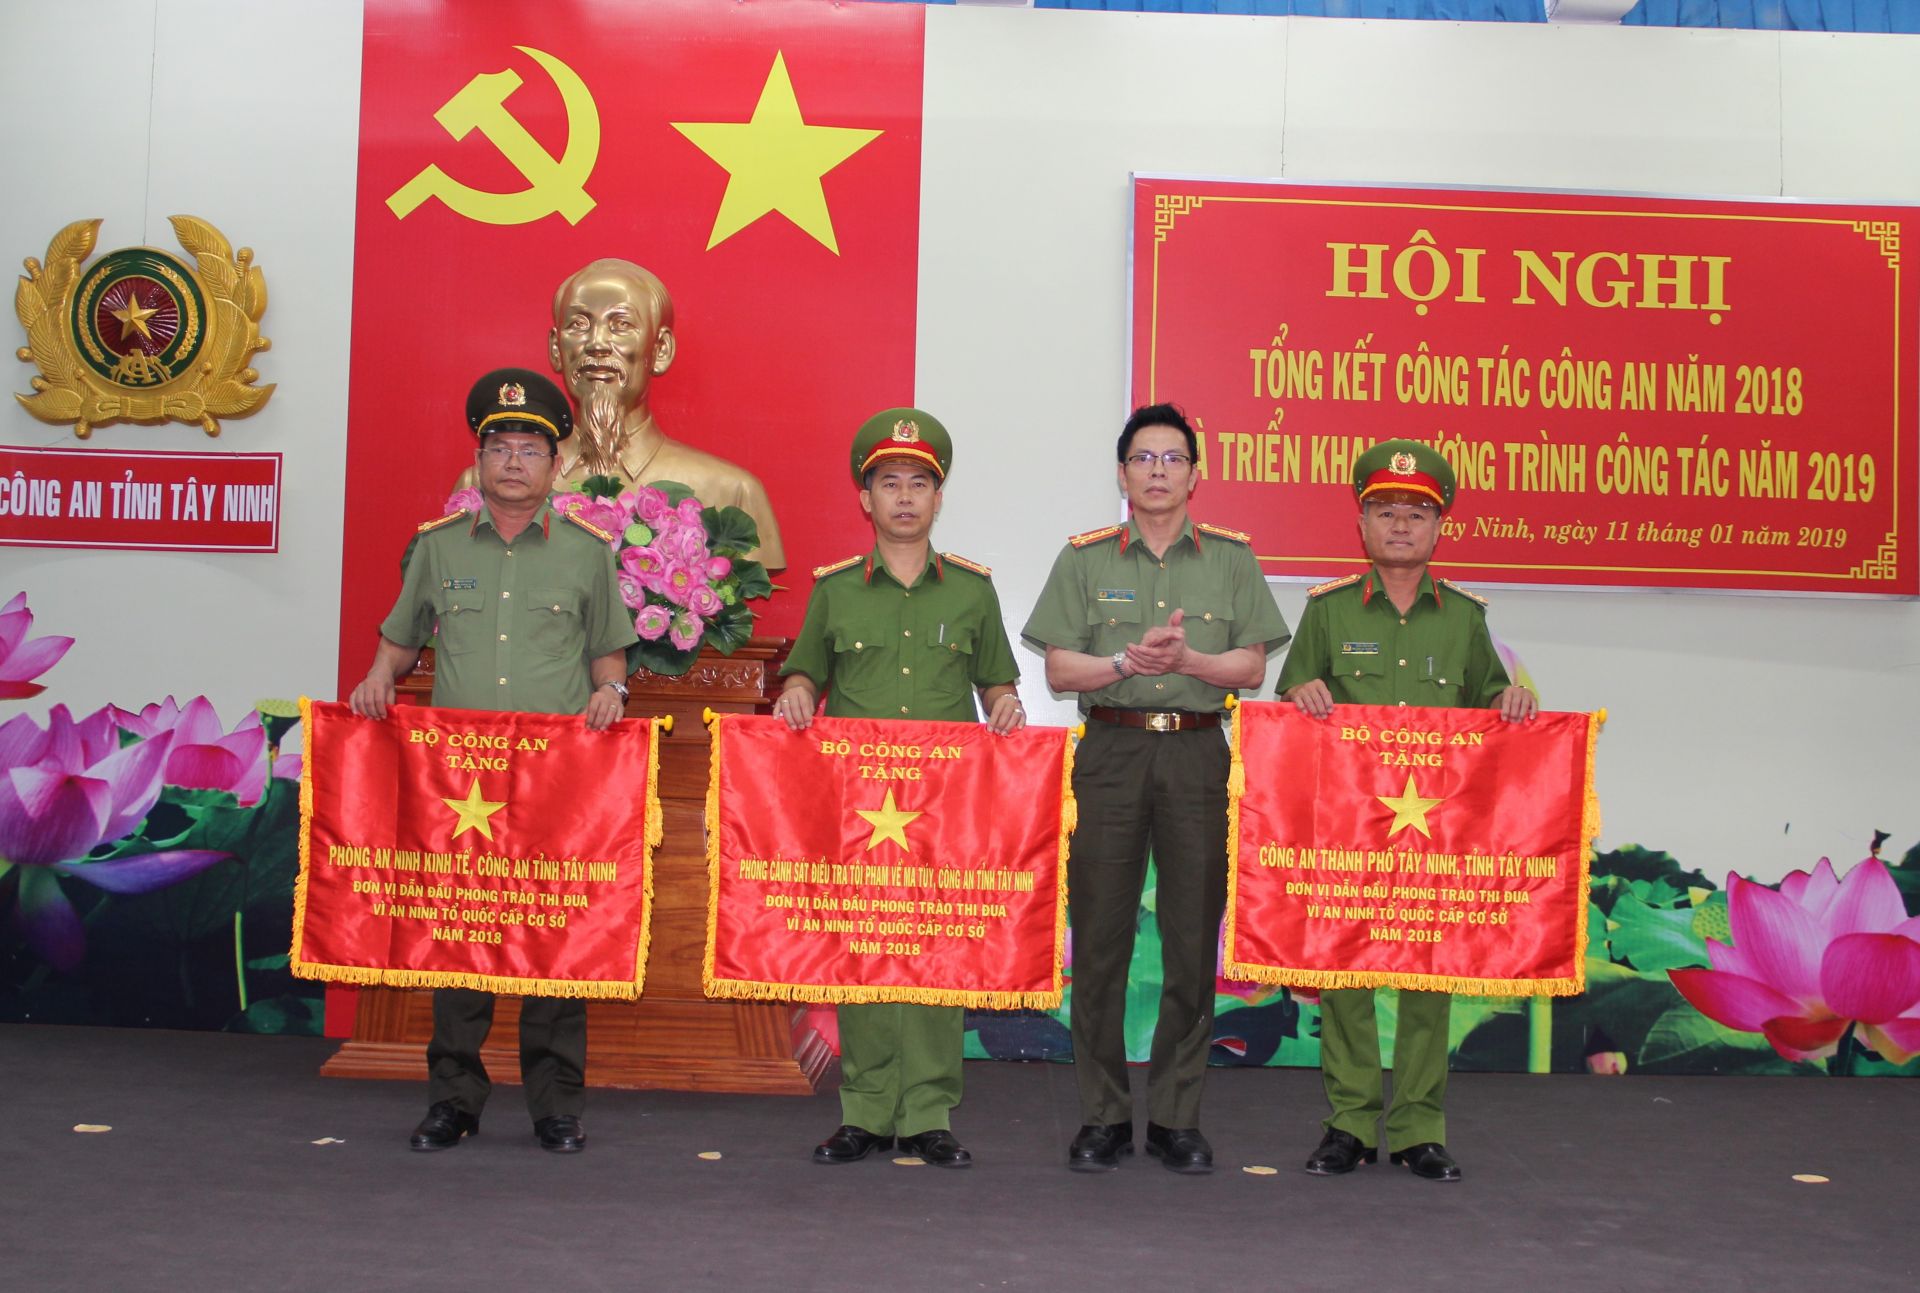 Điểm báo in Tây Ninh ngày 14.01.2019